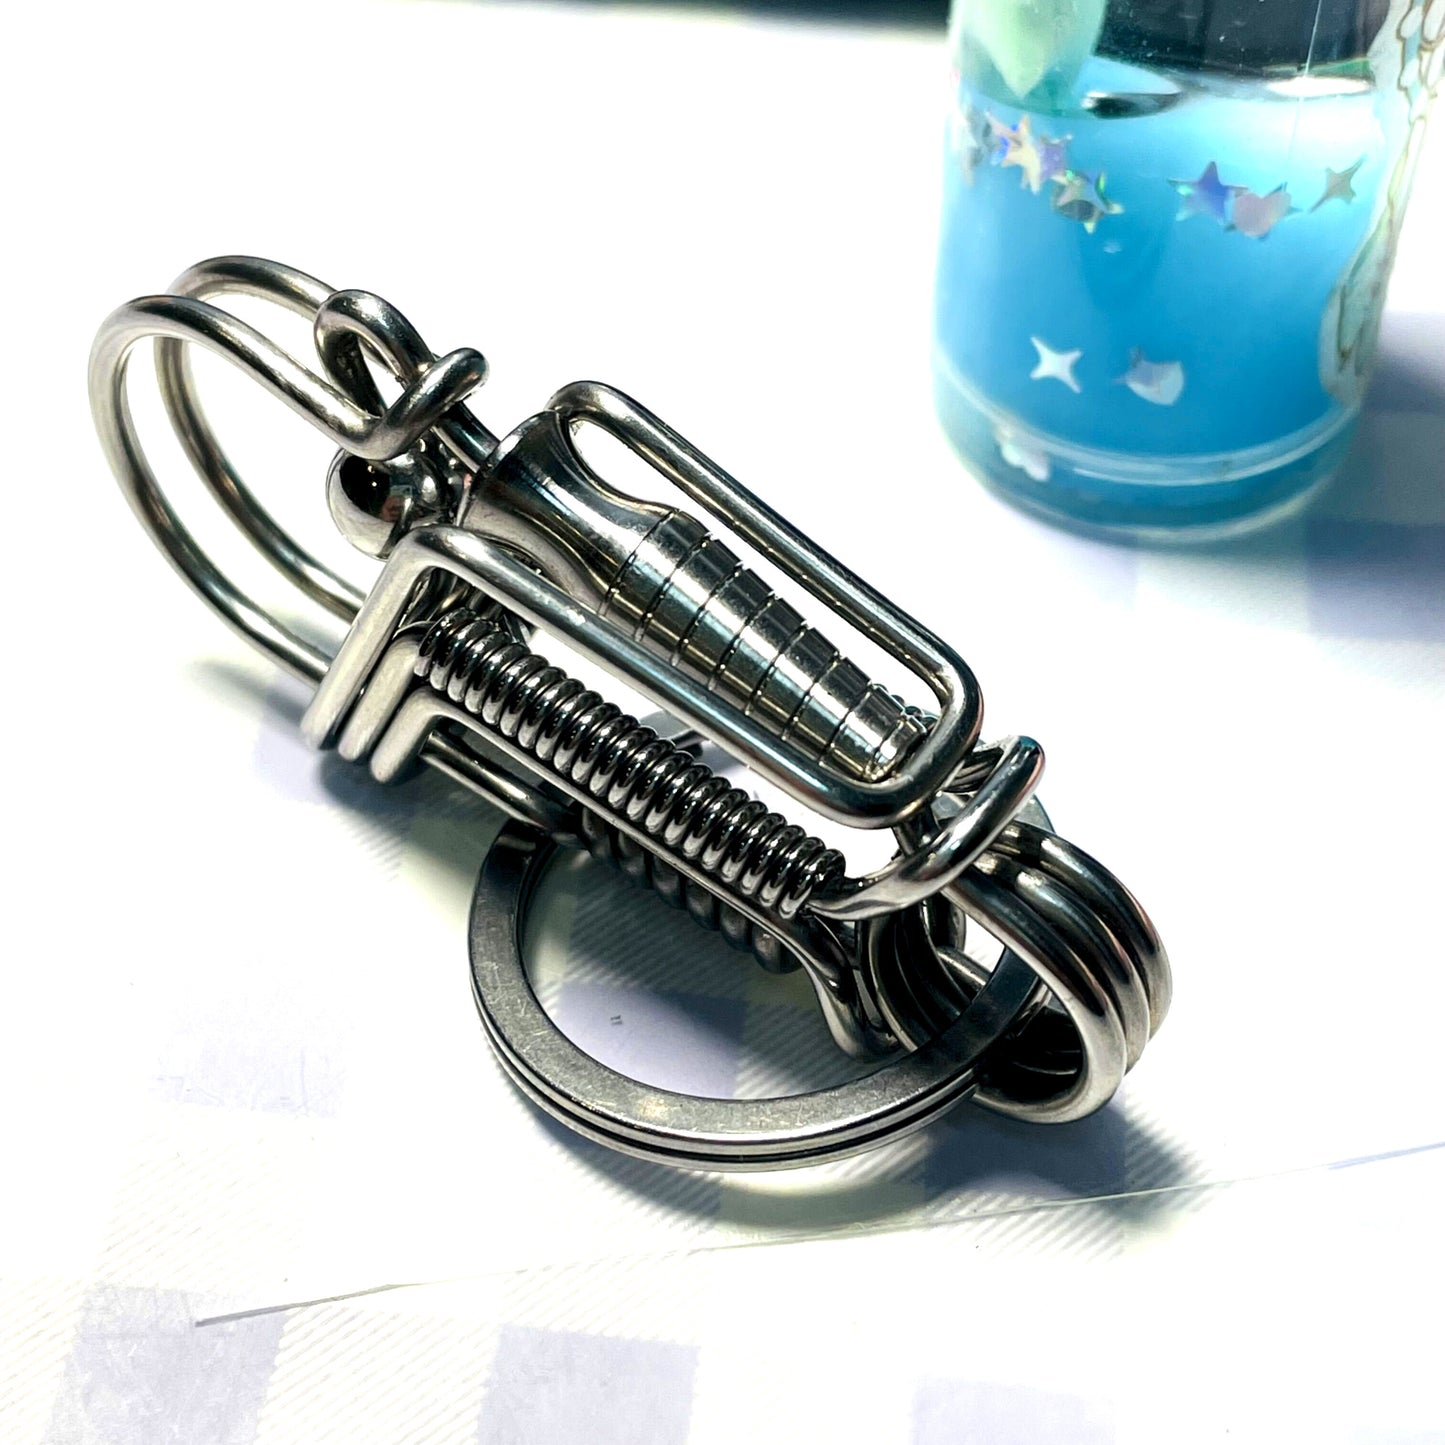 Vase style handmade wire keychain